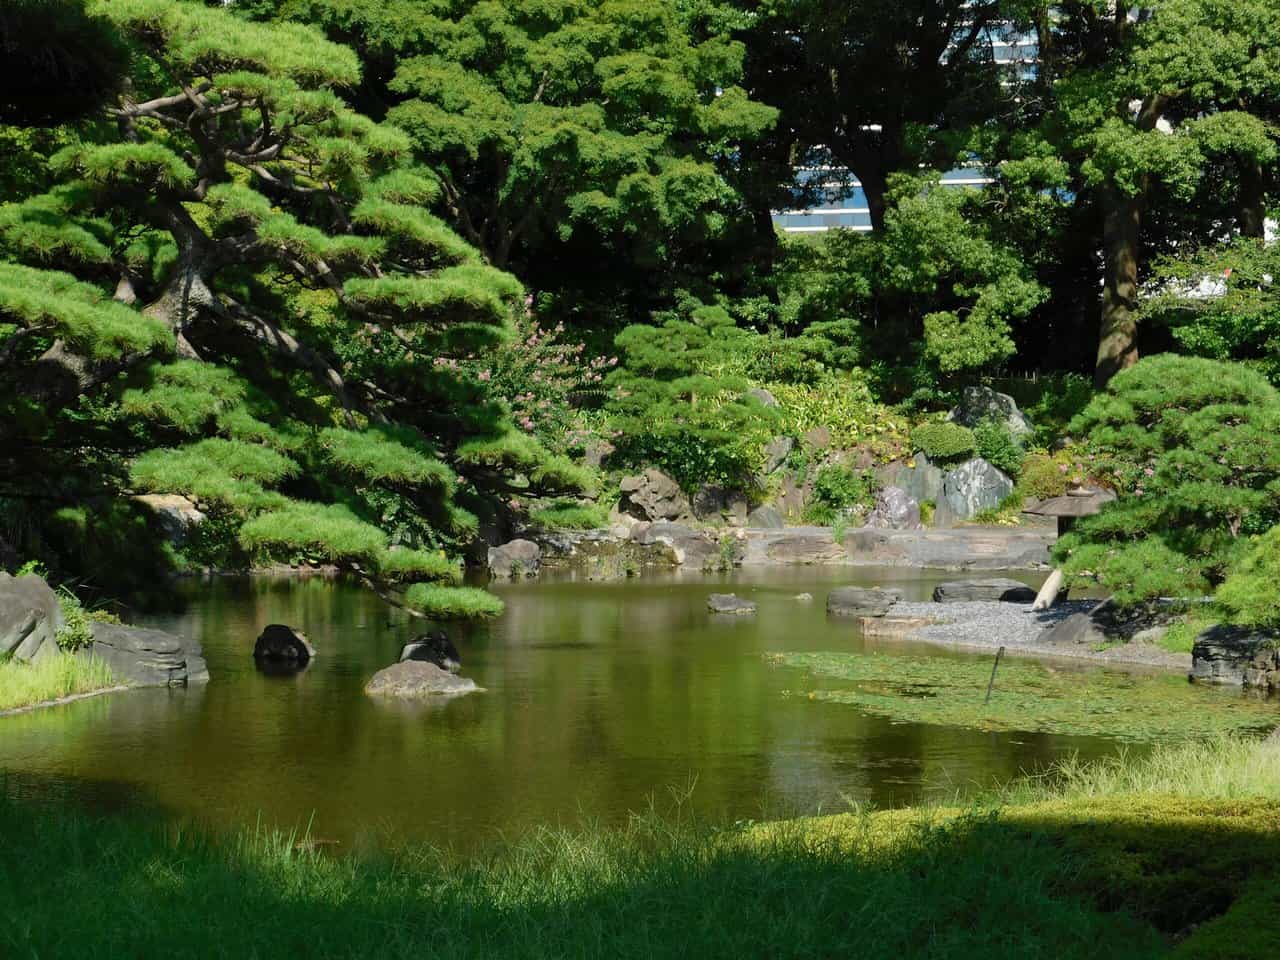 Pond in a Japanese garden.